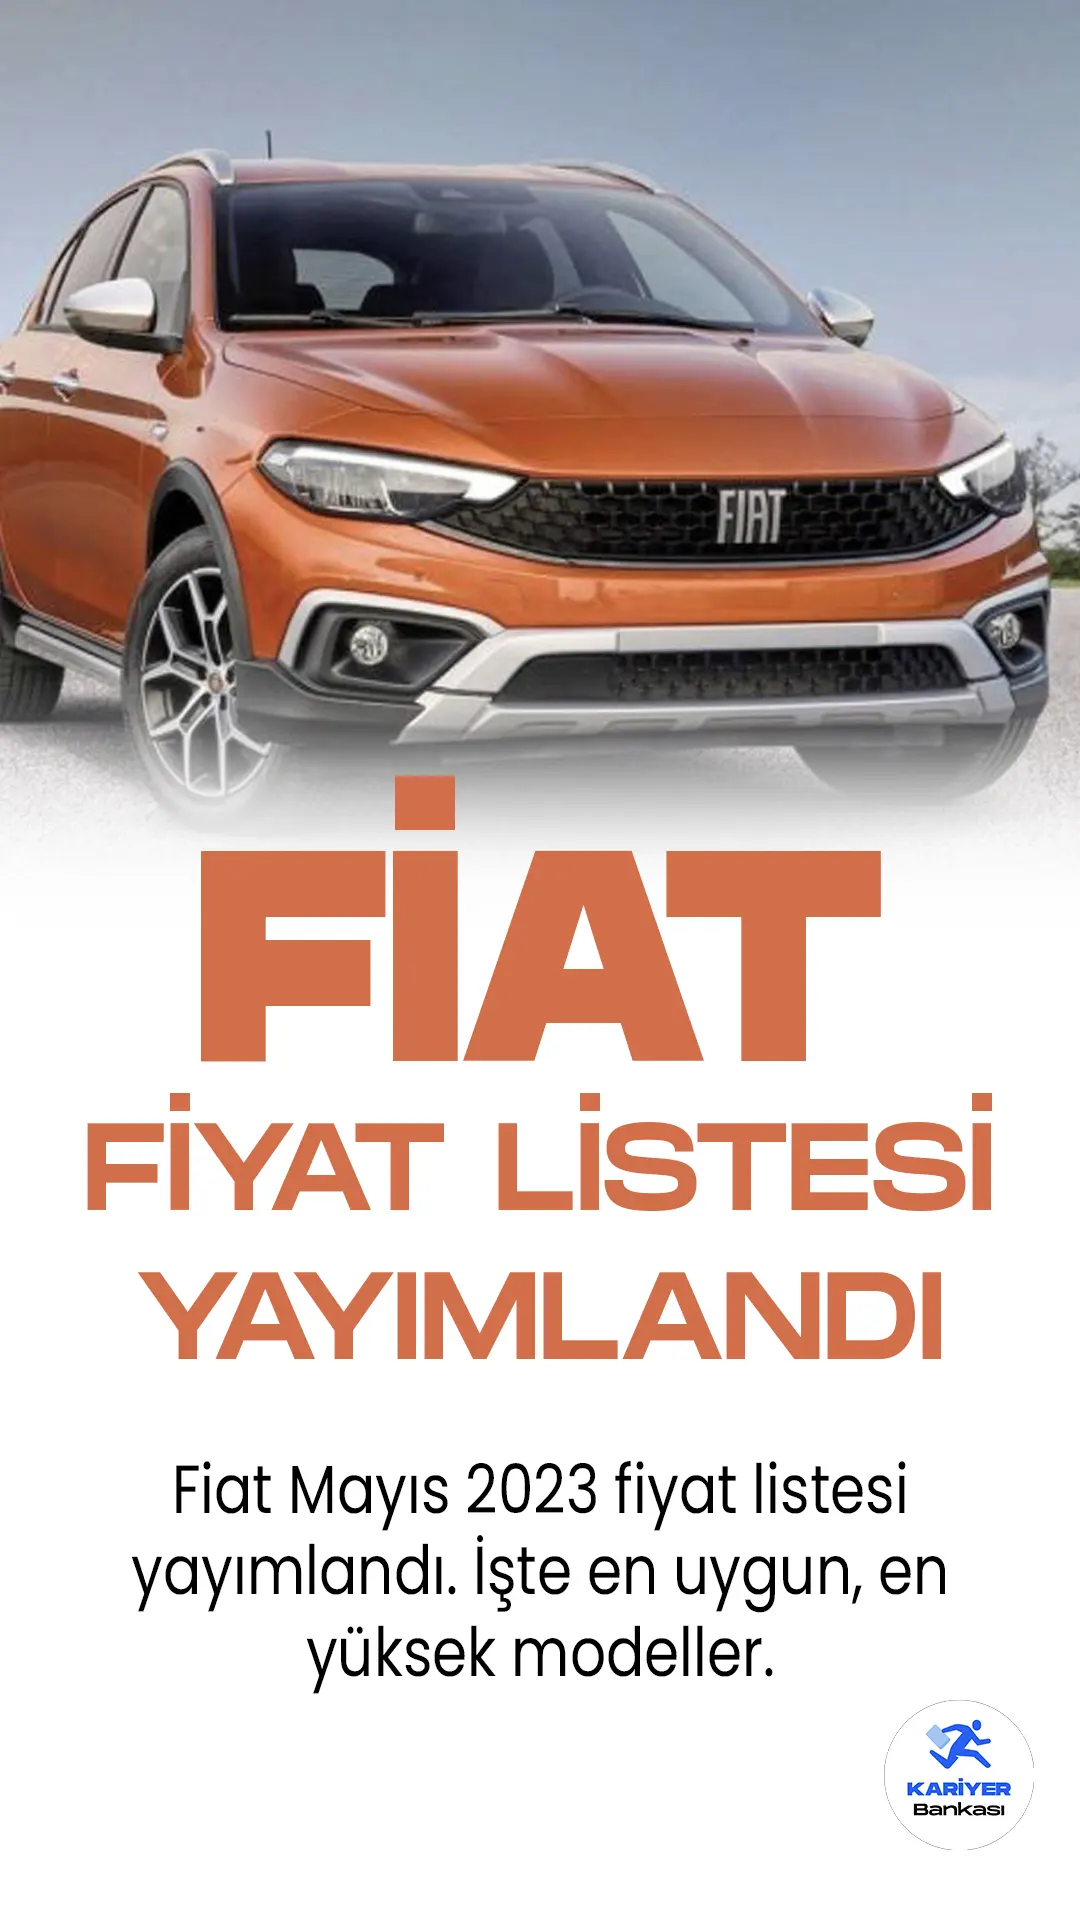 Fiat Mayıs 2023 Fiyat Listesi Yayımlandı!Türkiye'nin en popüler araç markaları arasında yer alan Fiat, her ay fiyat listelerini güncellemeye devam ediyor. Fiat'ın en sevilen modelleri arasında Egea, Egea Cross, Egea Hatchback, Egea Cross Wagon ve 500 modeli yer alıyor. Hem uygun fiyatlı, hem de modern tasarımı olmasından dolayı en çok tercih araç markaları arasında ilk sıralarda yer alıyor.